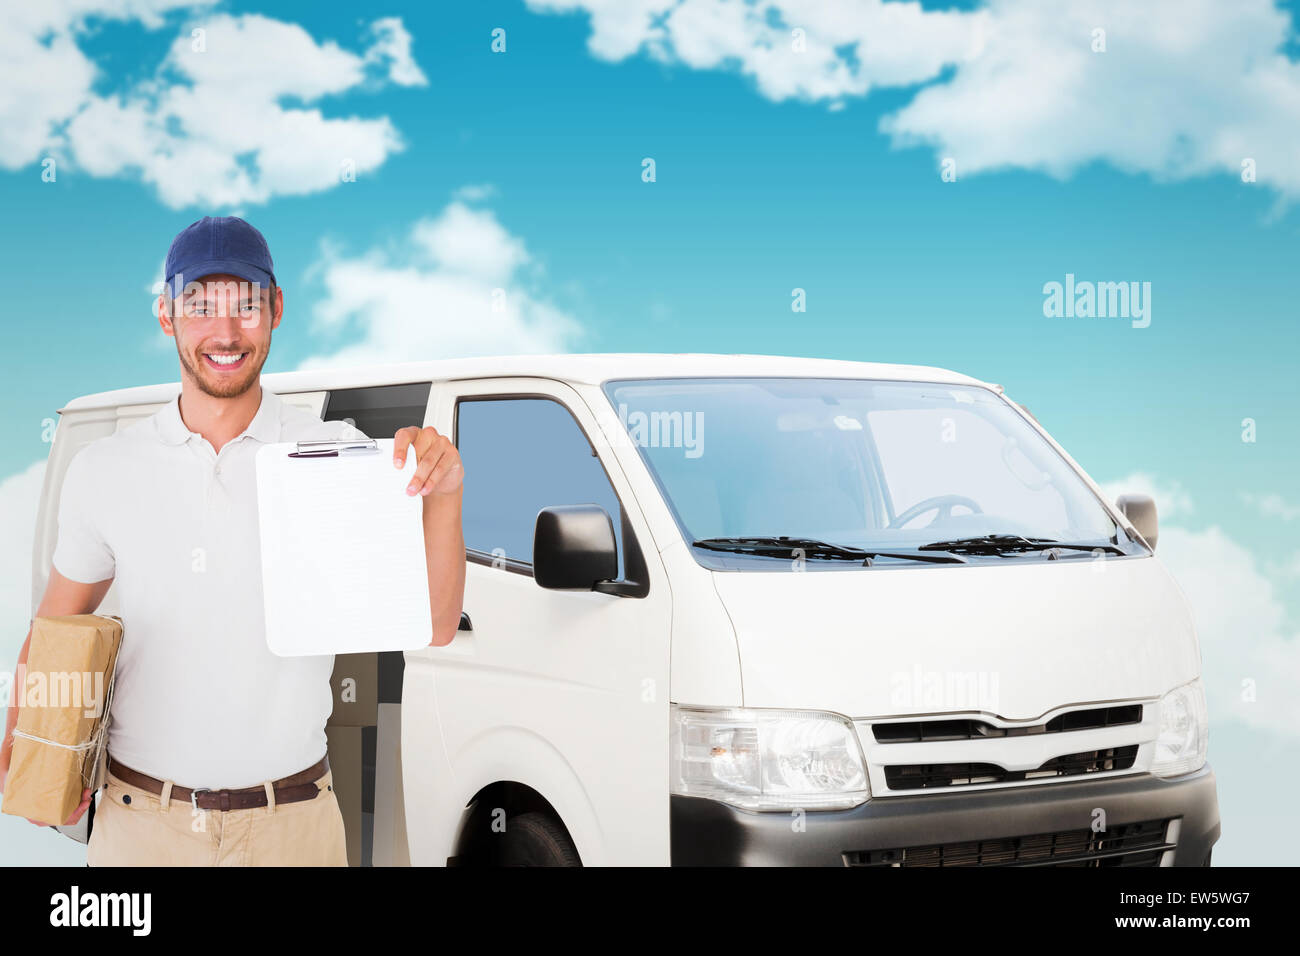 Immagine composita di felice consegna uomo con scatola di cartone e appunti Foto Stock